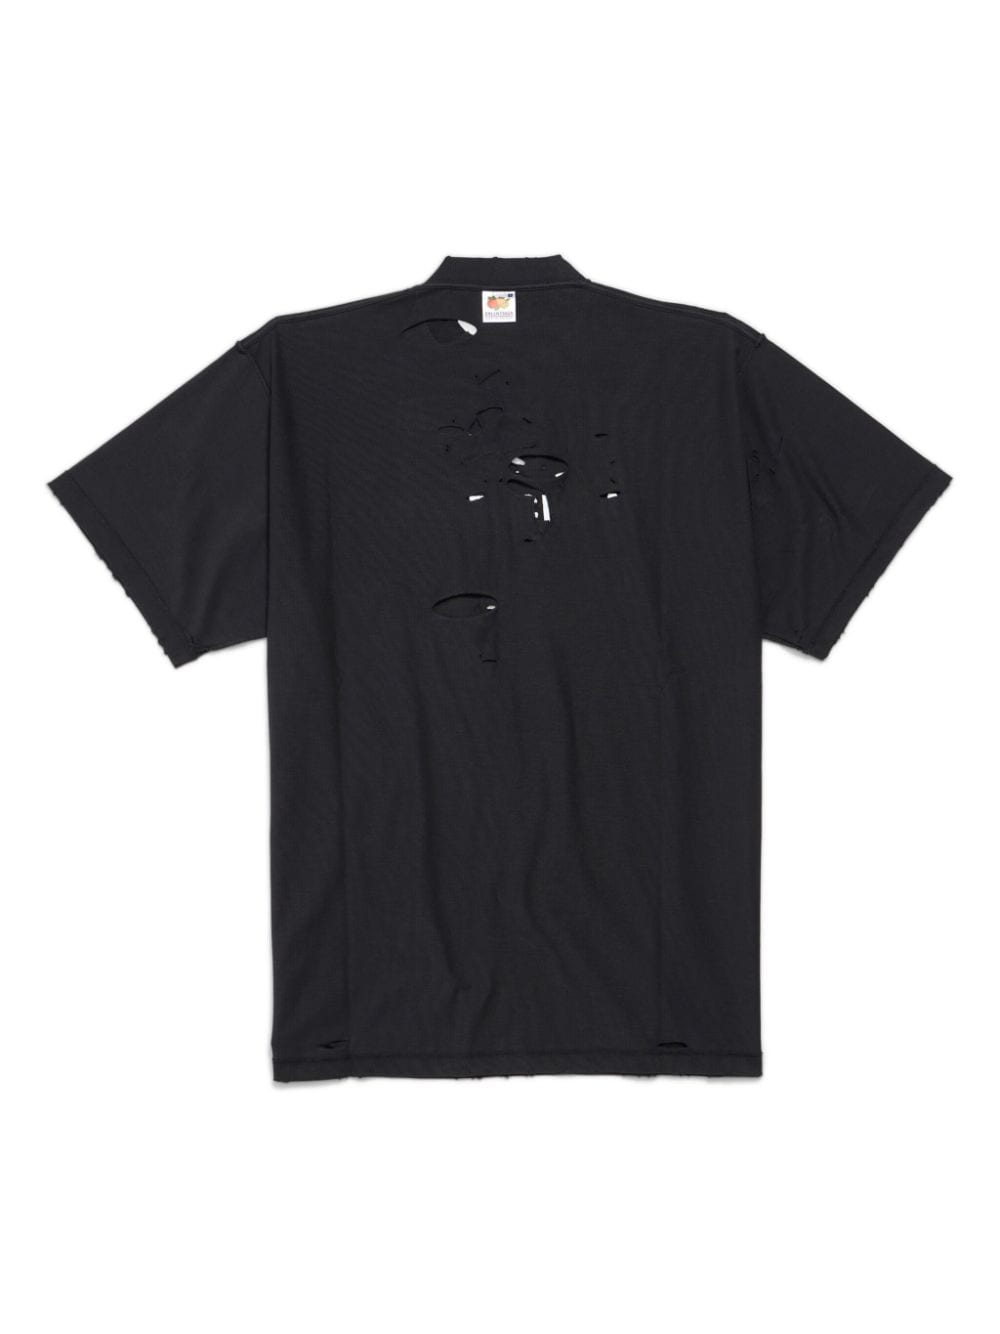 Balenciaga T-shirt met geborduurd logo Zwart